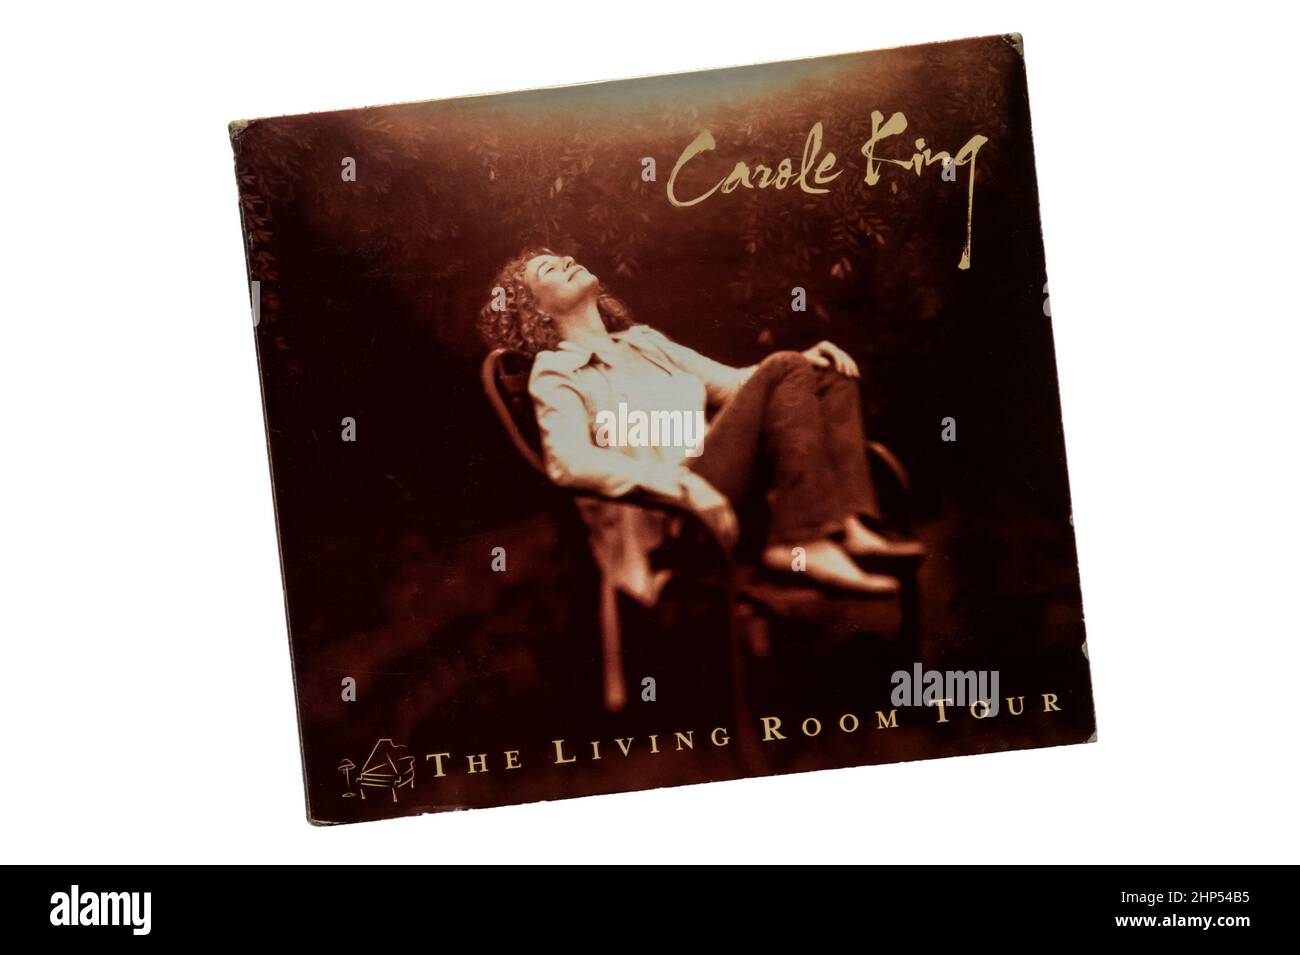 The Living Room Tour è un album live di Carole King pubblicato nel 2005. Foto Stock